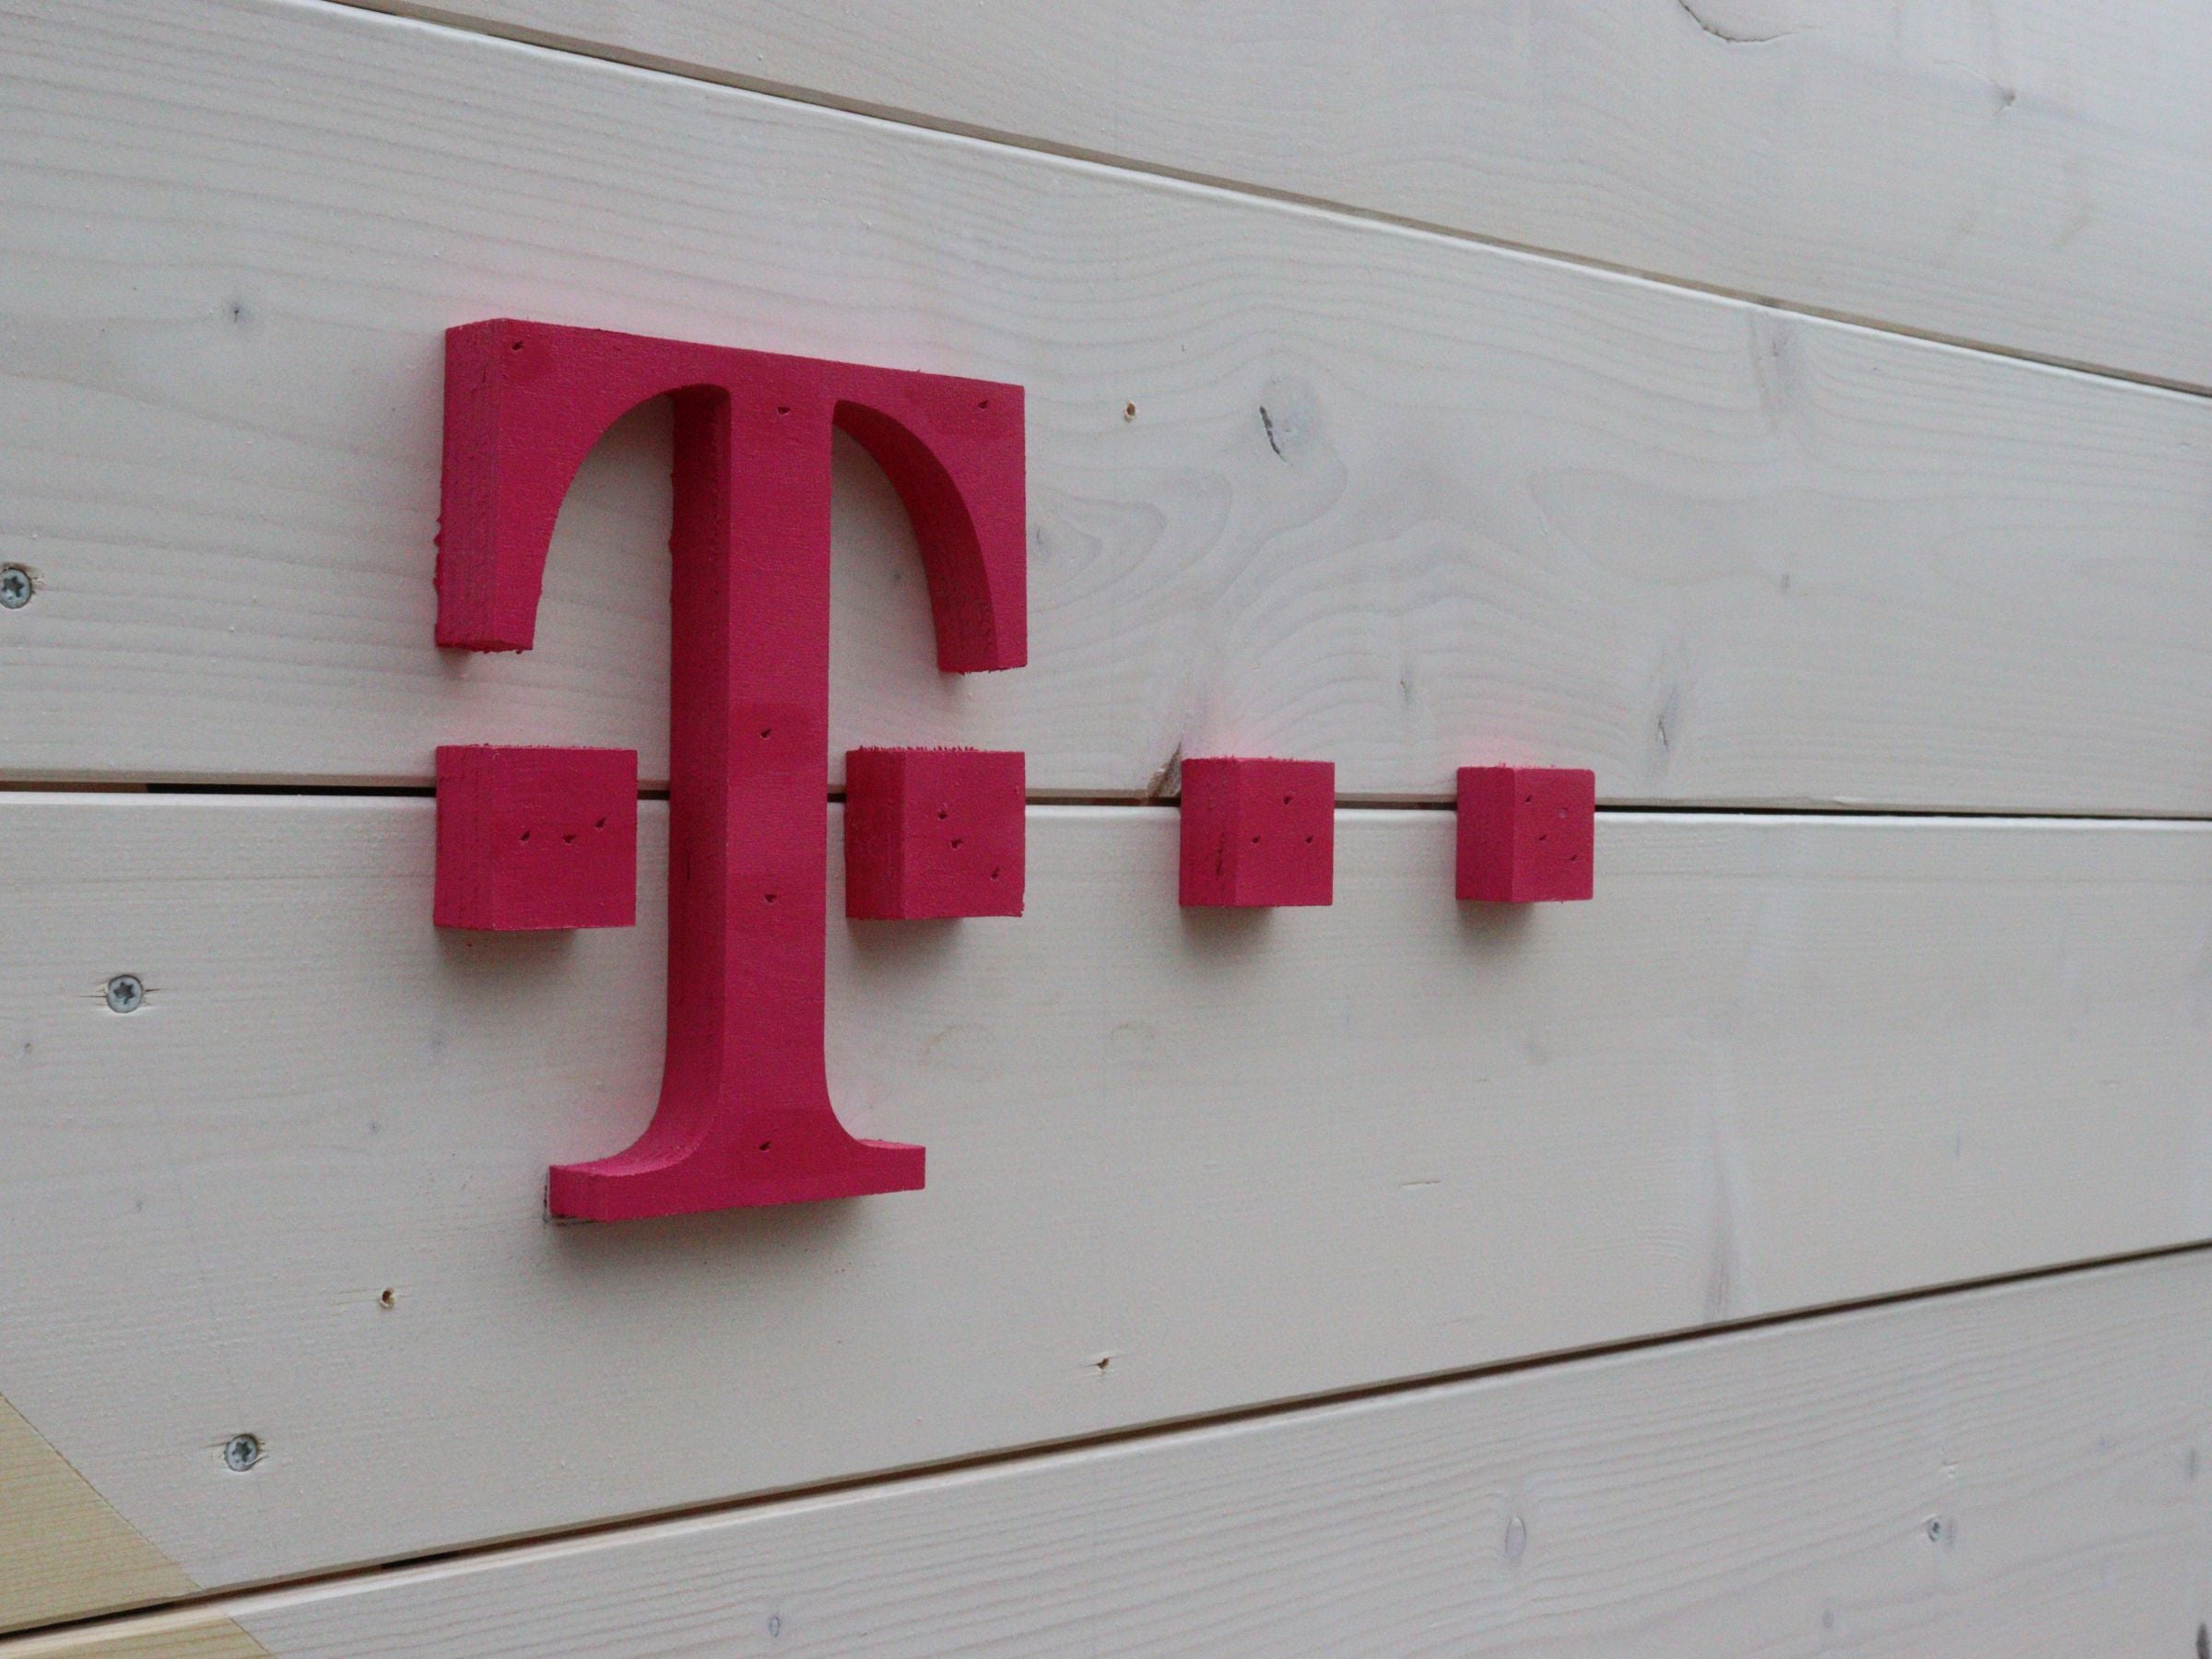 #Preiserhöhung bei der Telekom: Telekom-Chef macht klare Ansage